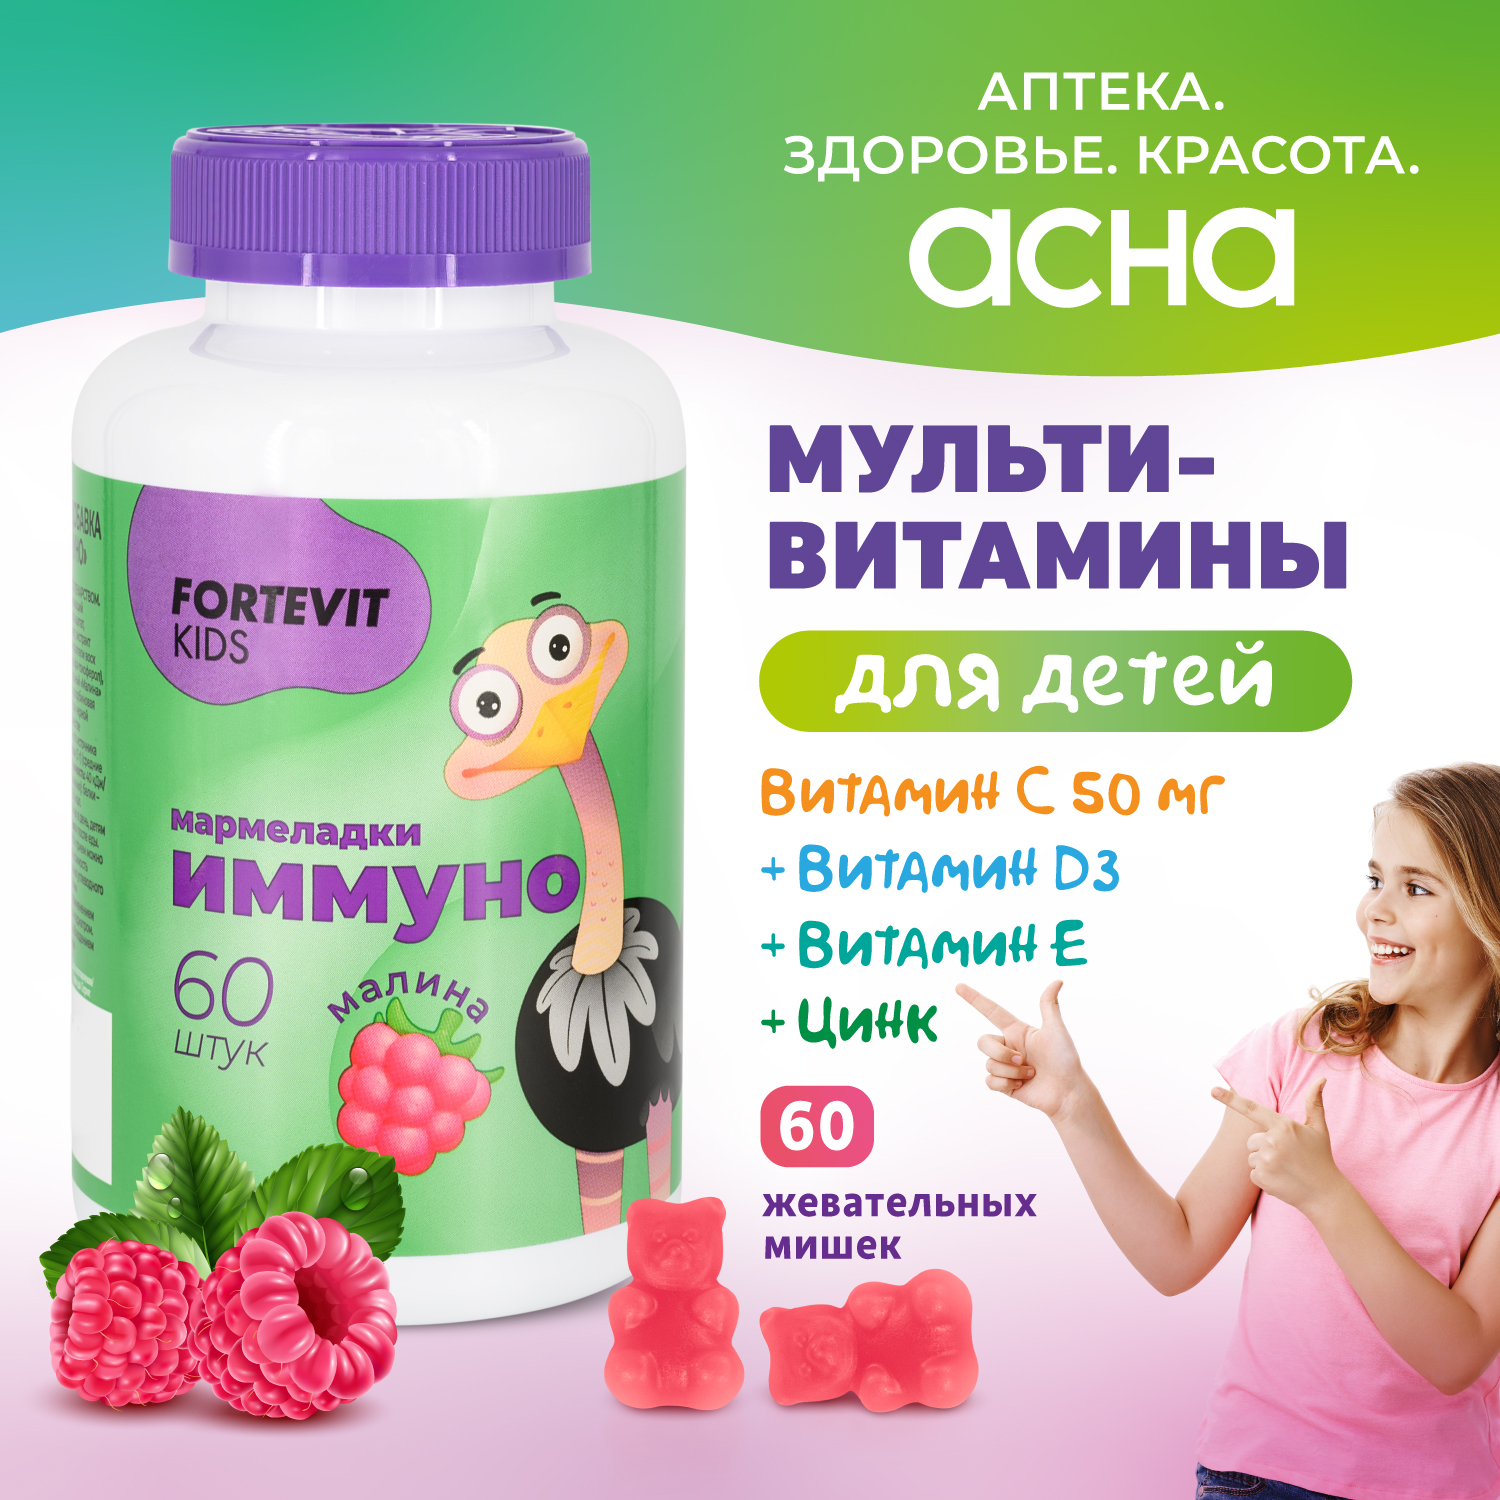 Купить Детские витамины Fortevit Kids мармеладки Иммуно жевательные со вкусом Малины, 60 штук